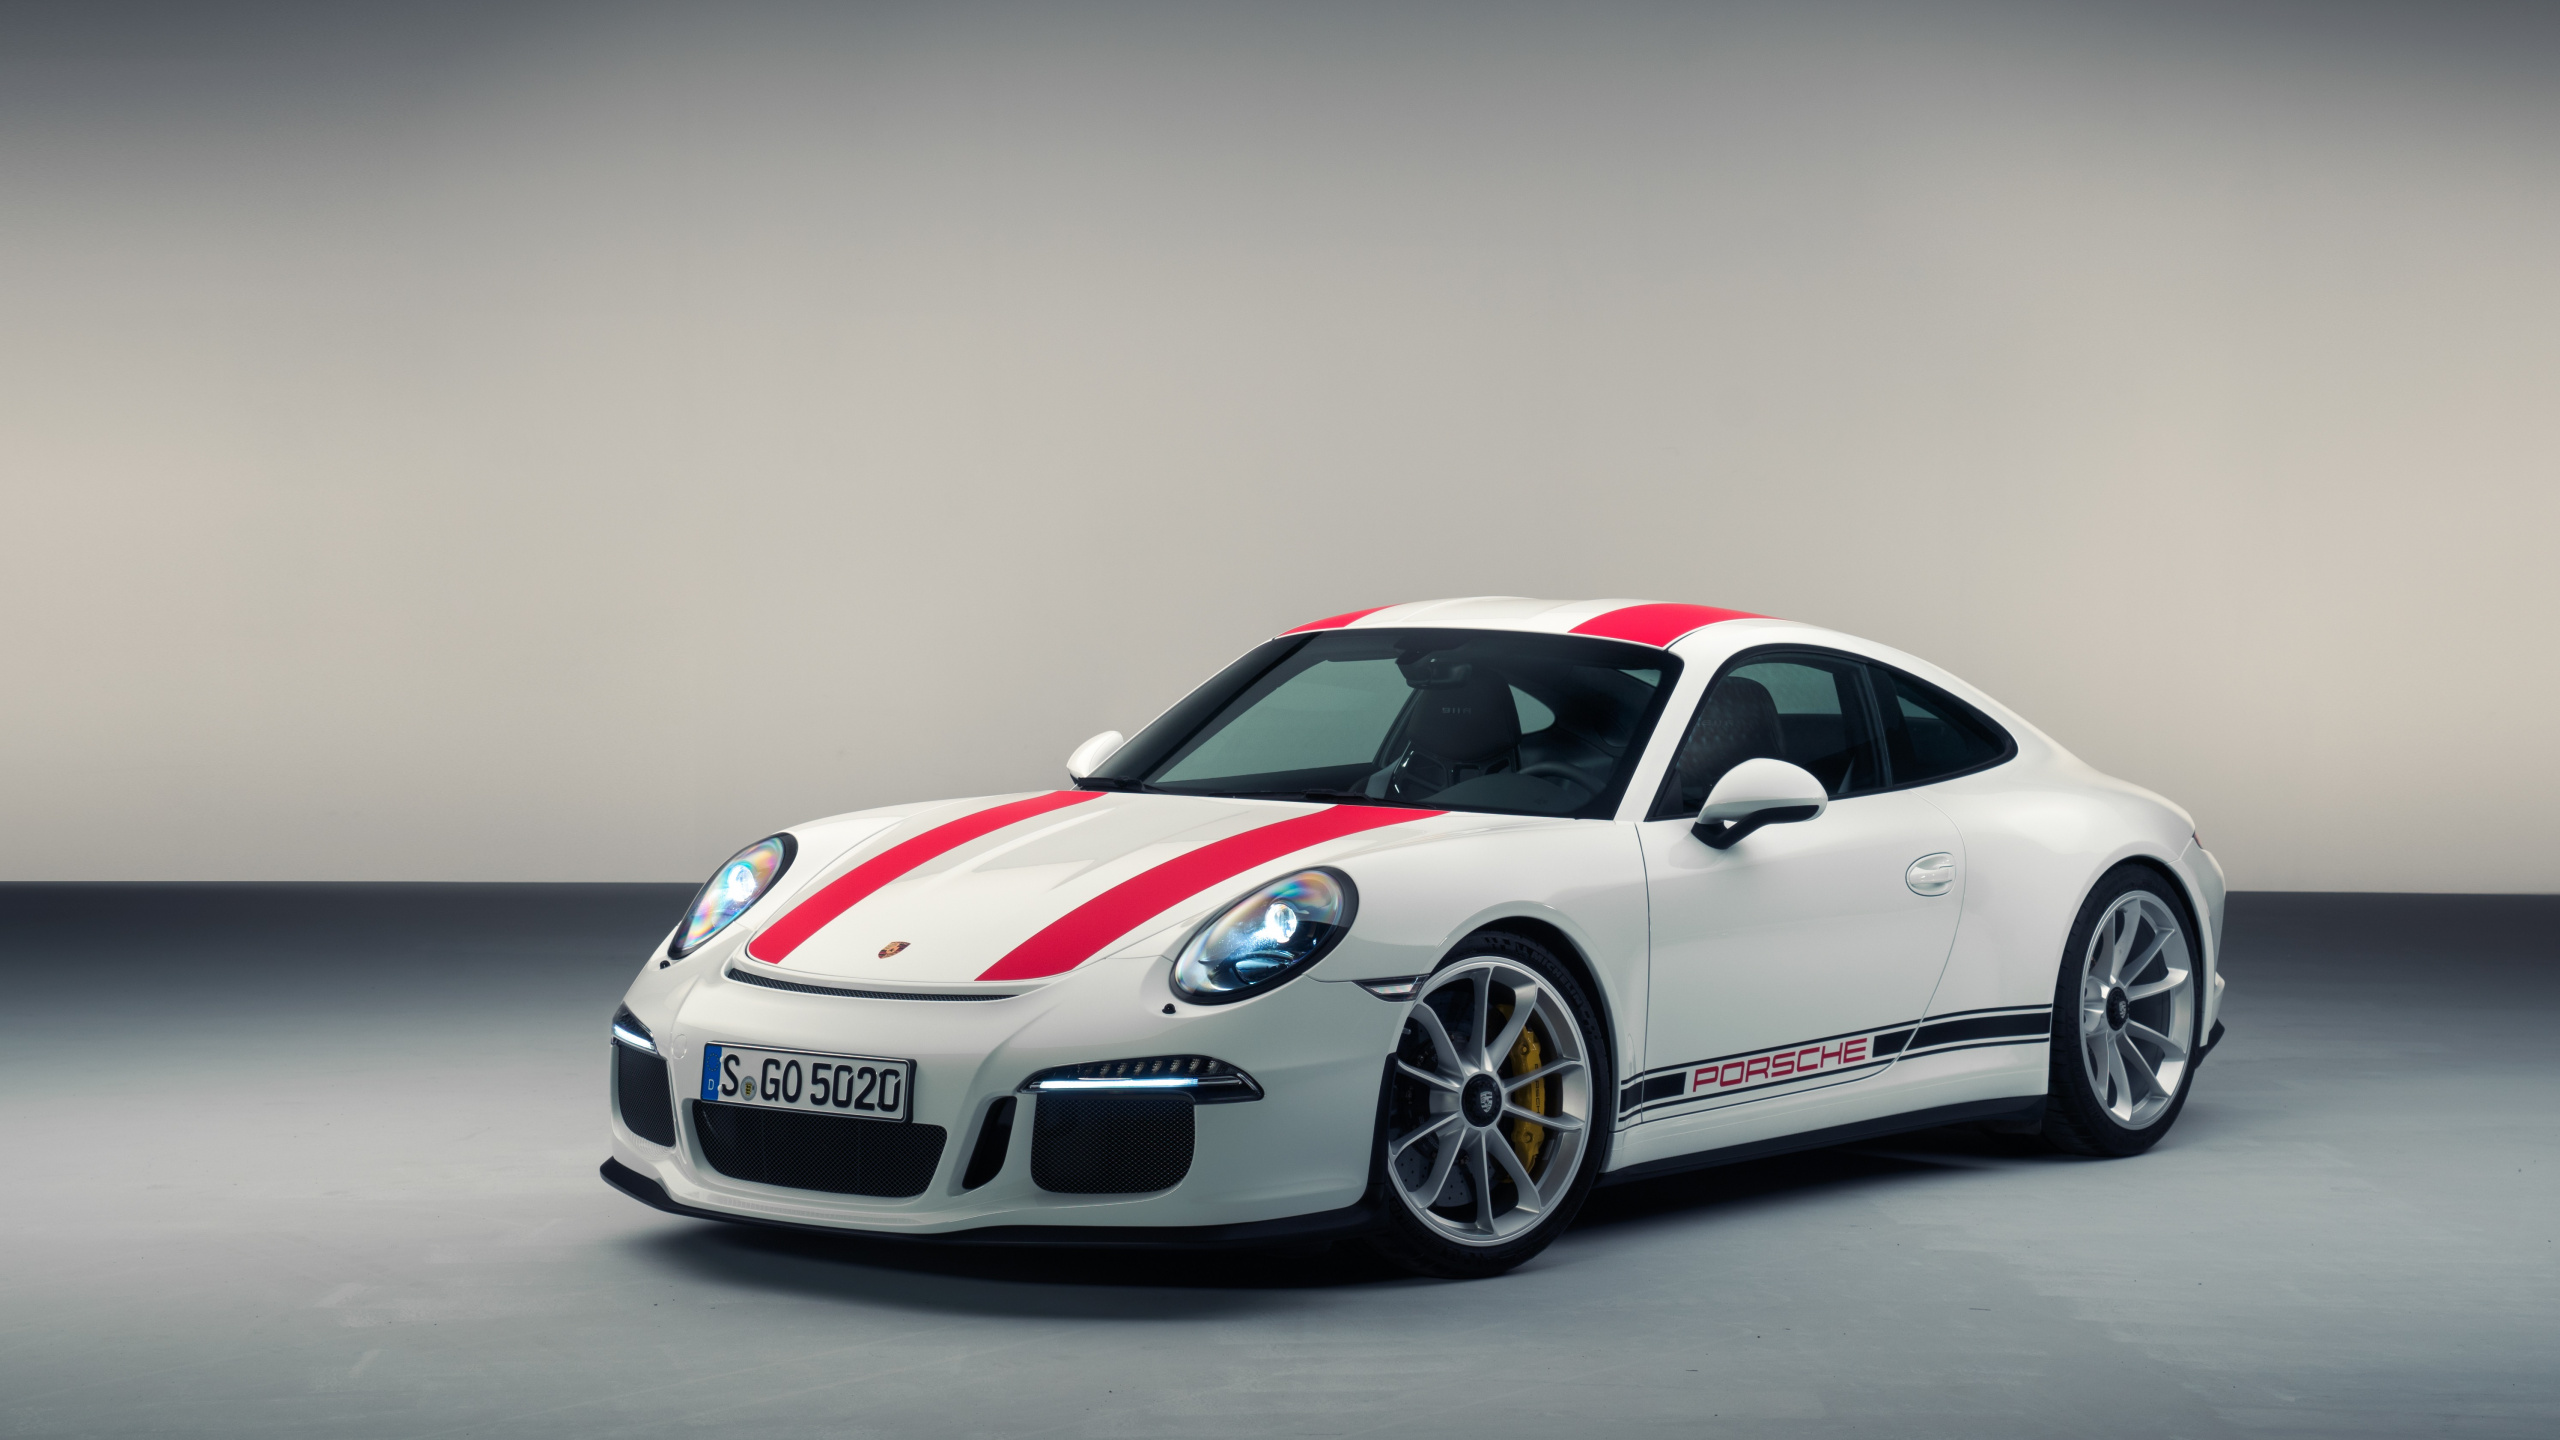 Weißer Und Roter Porsche 911. Wallpaper in 2560x1440 Resolution